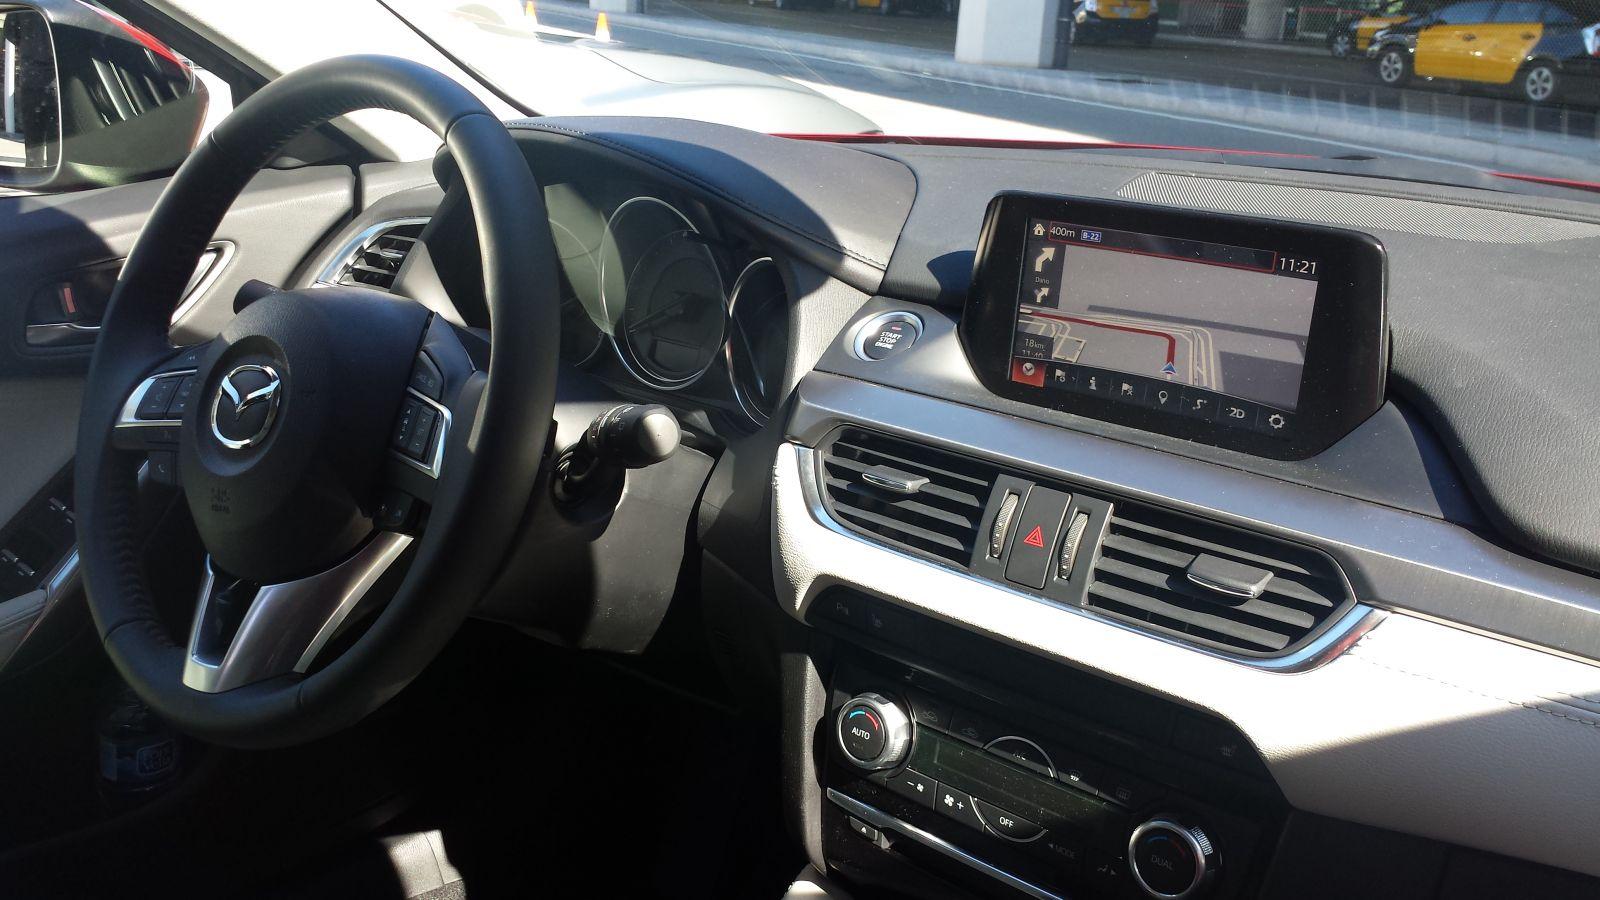 2015 Mazda6 SW - Inside